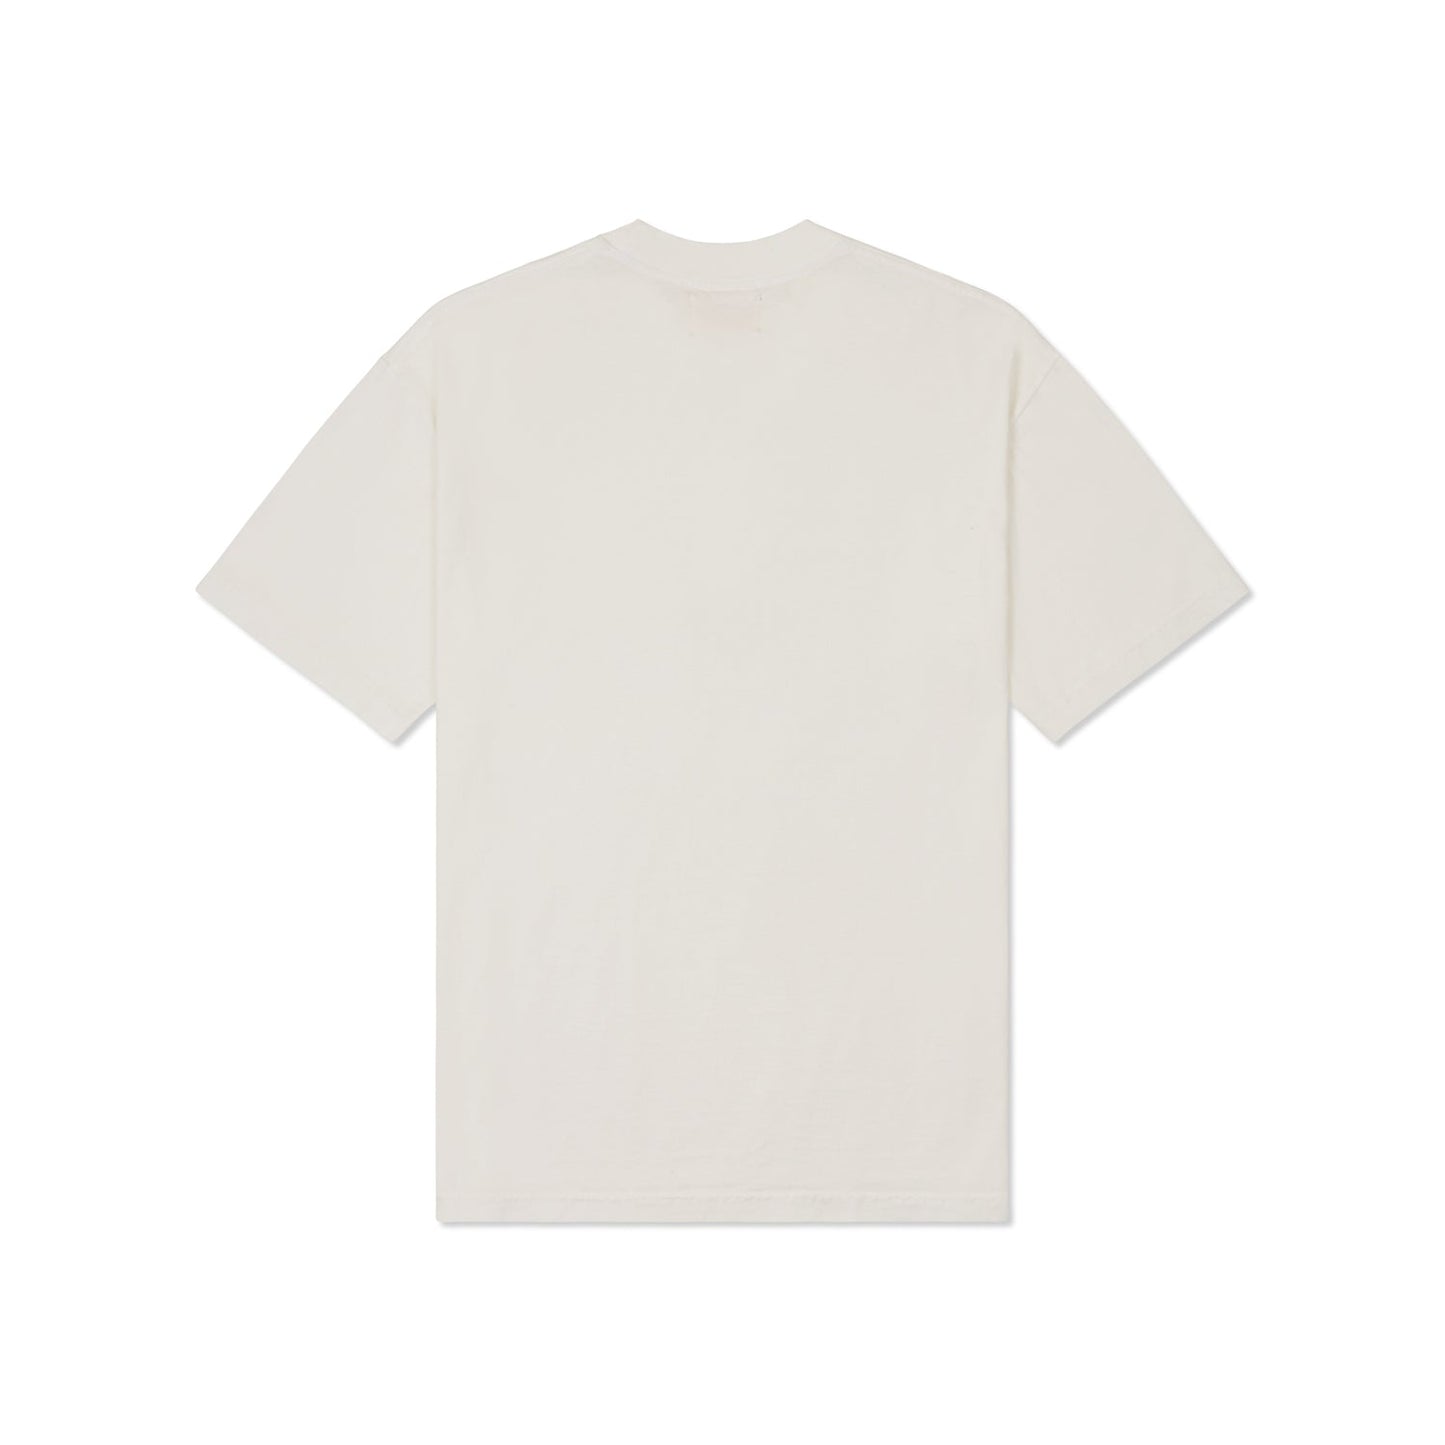 Camiseta LA - Crema Blanquecina